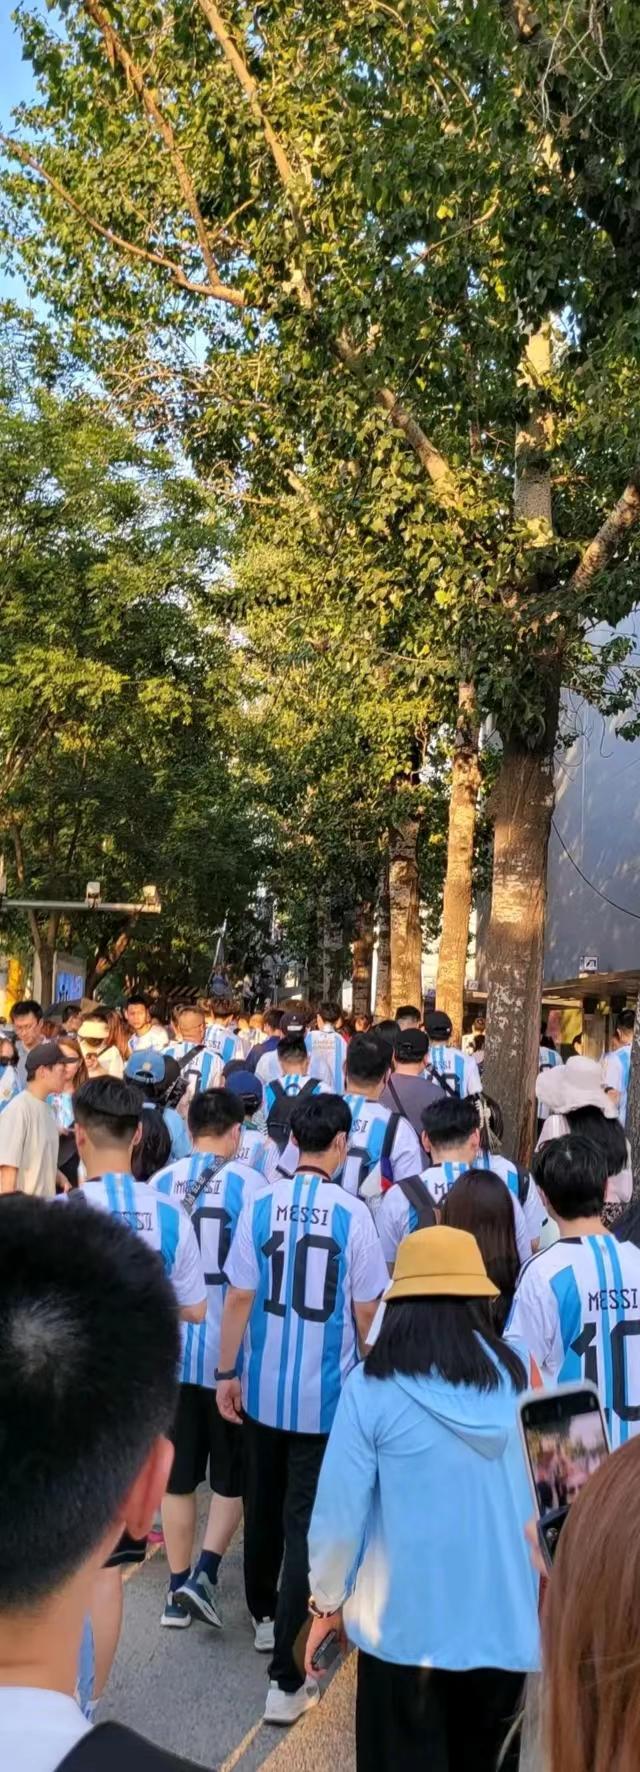 今天在北京的街头巷尾随处可见到穿着梅西球服的球迷的身影。
梅西，相信有很多人和我(3)